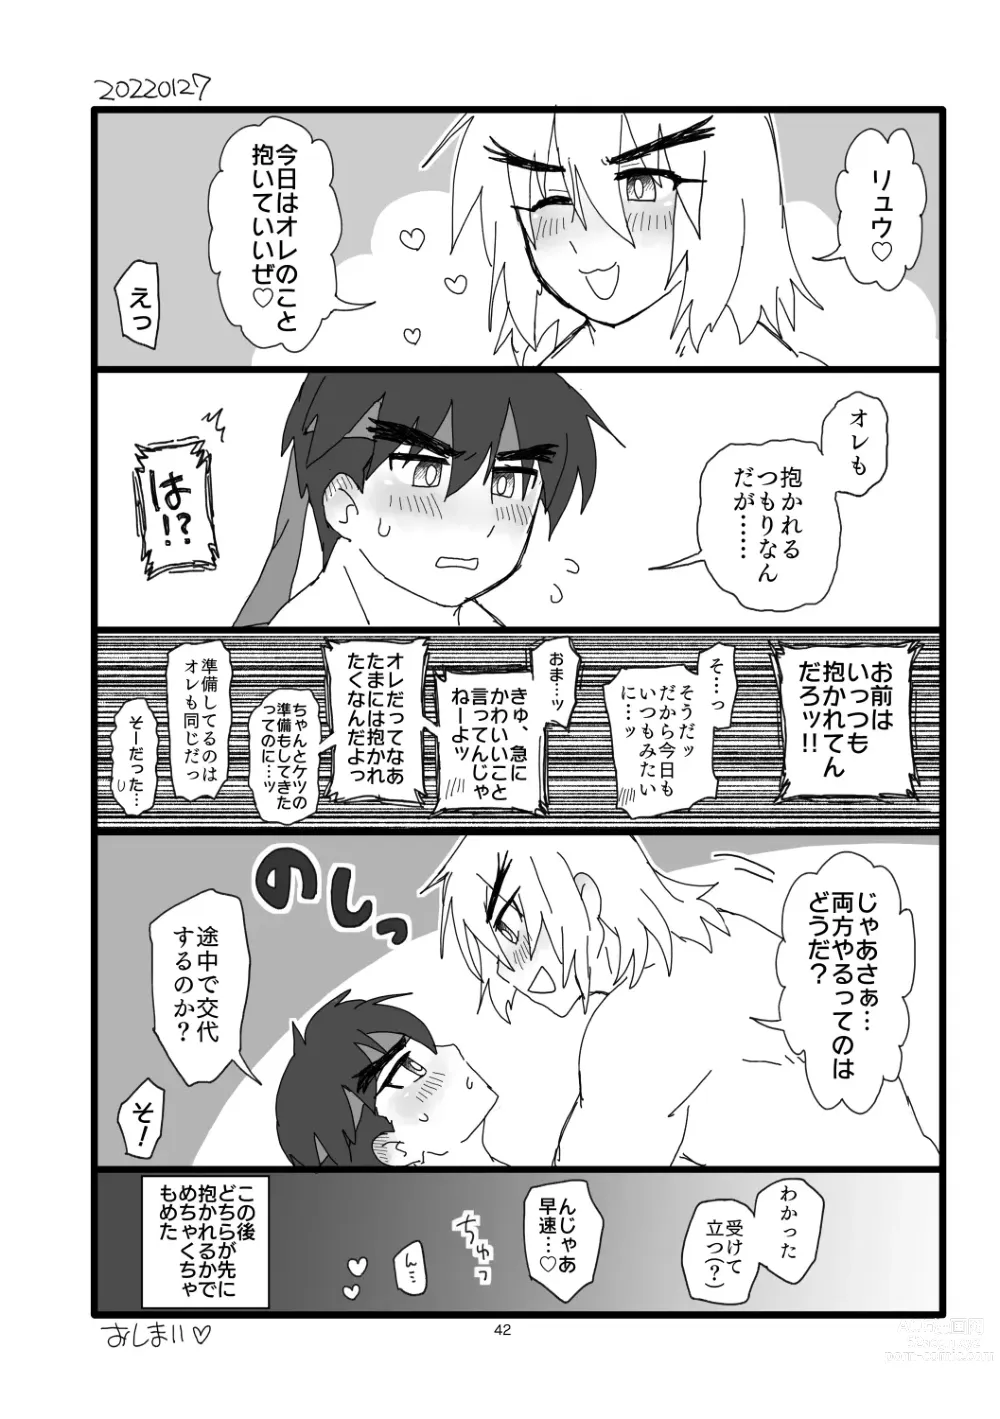 Page 41 of doujinshi Kobushi Kiss